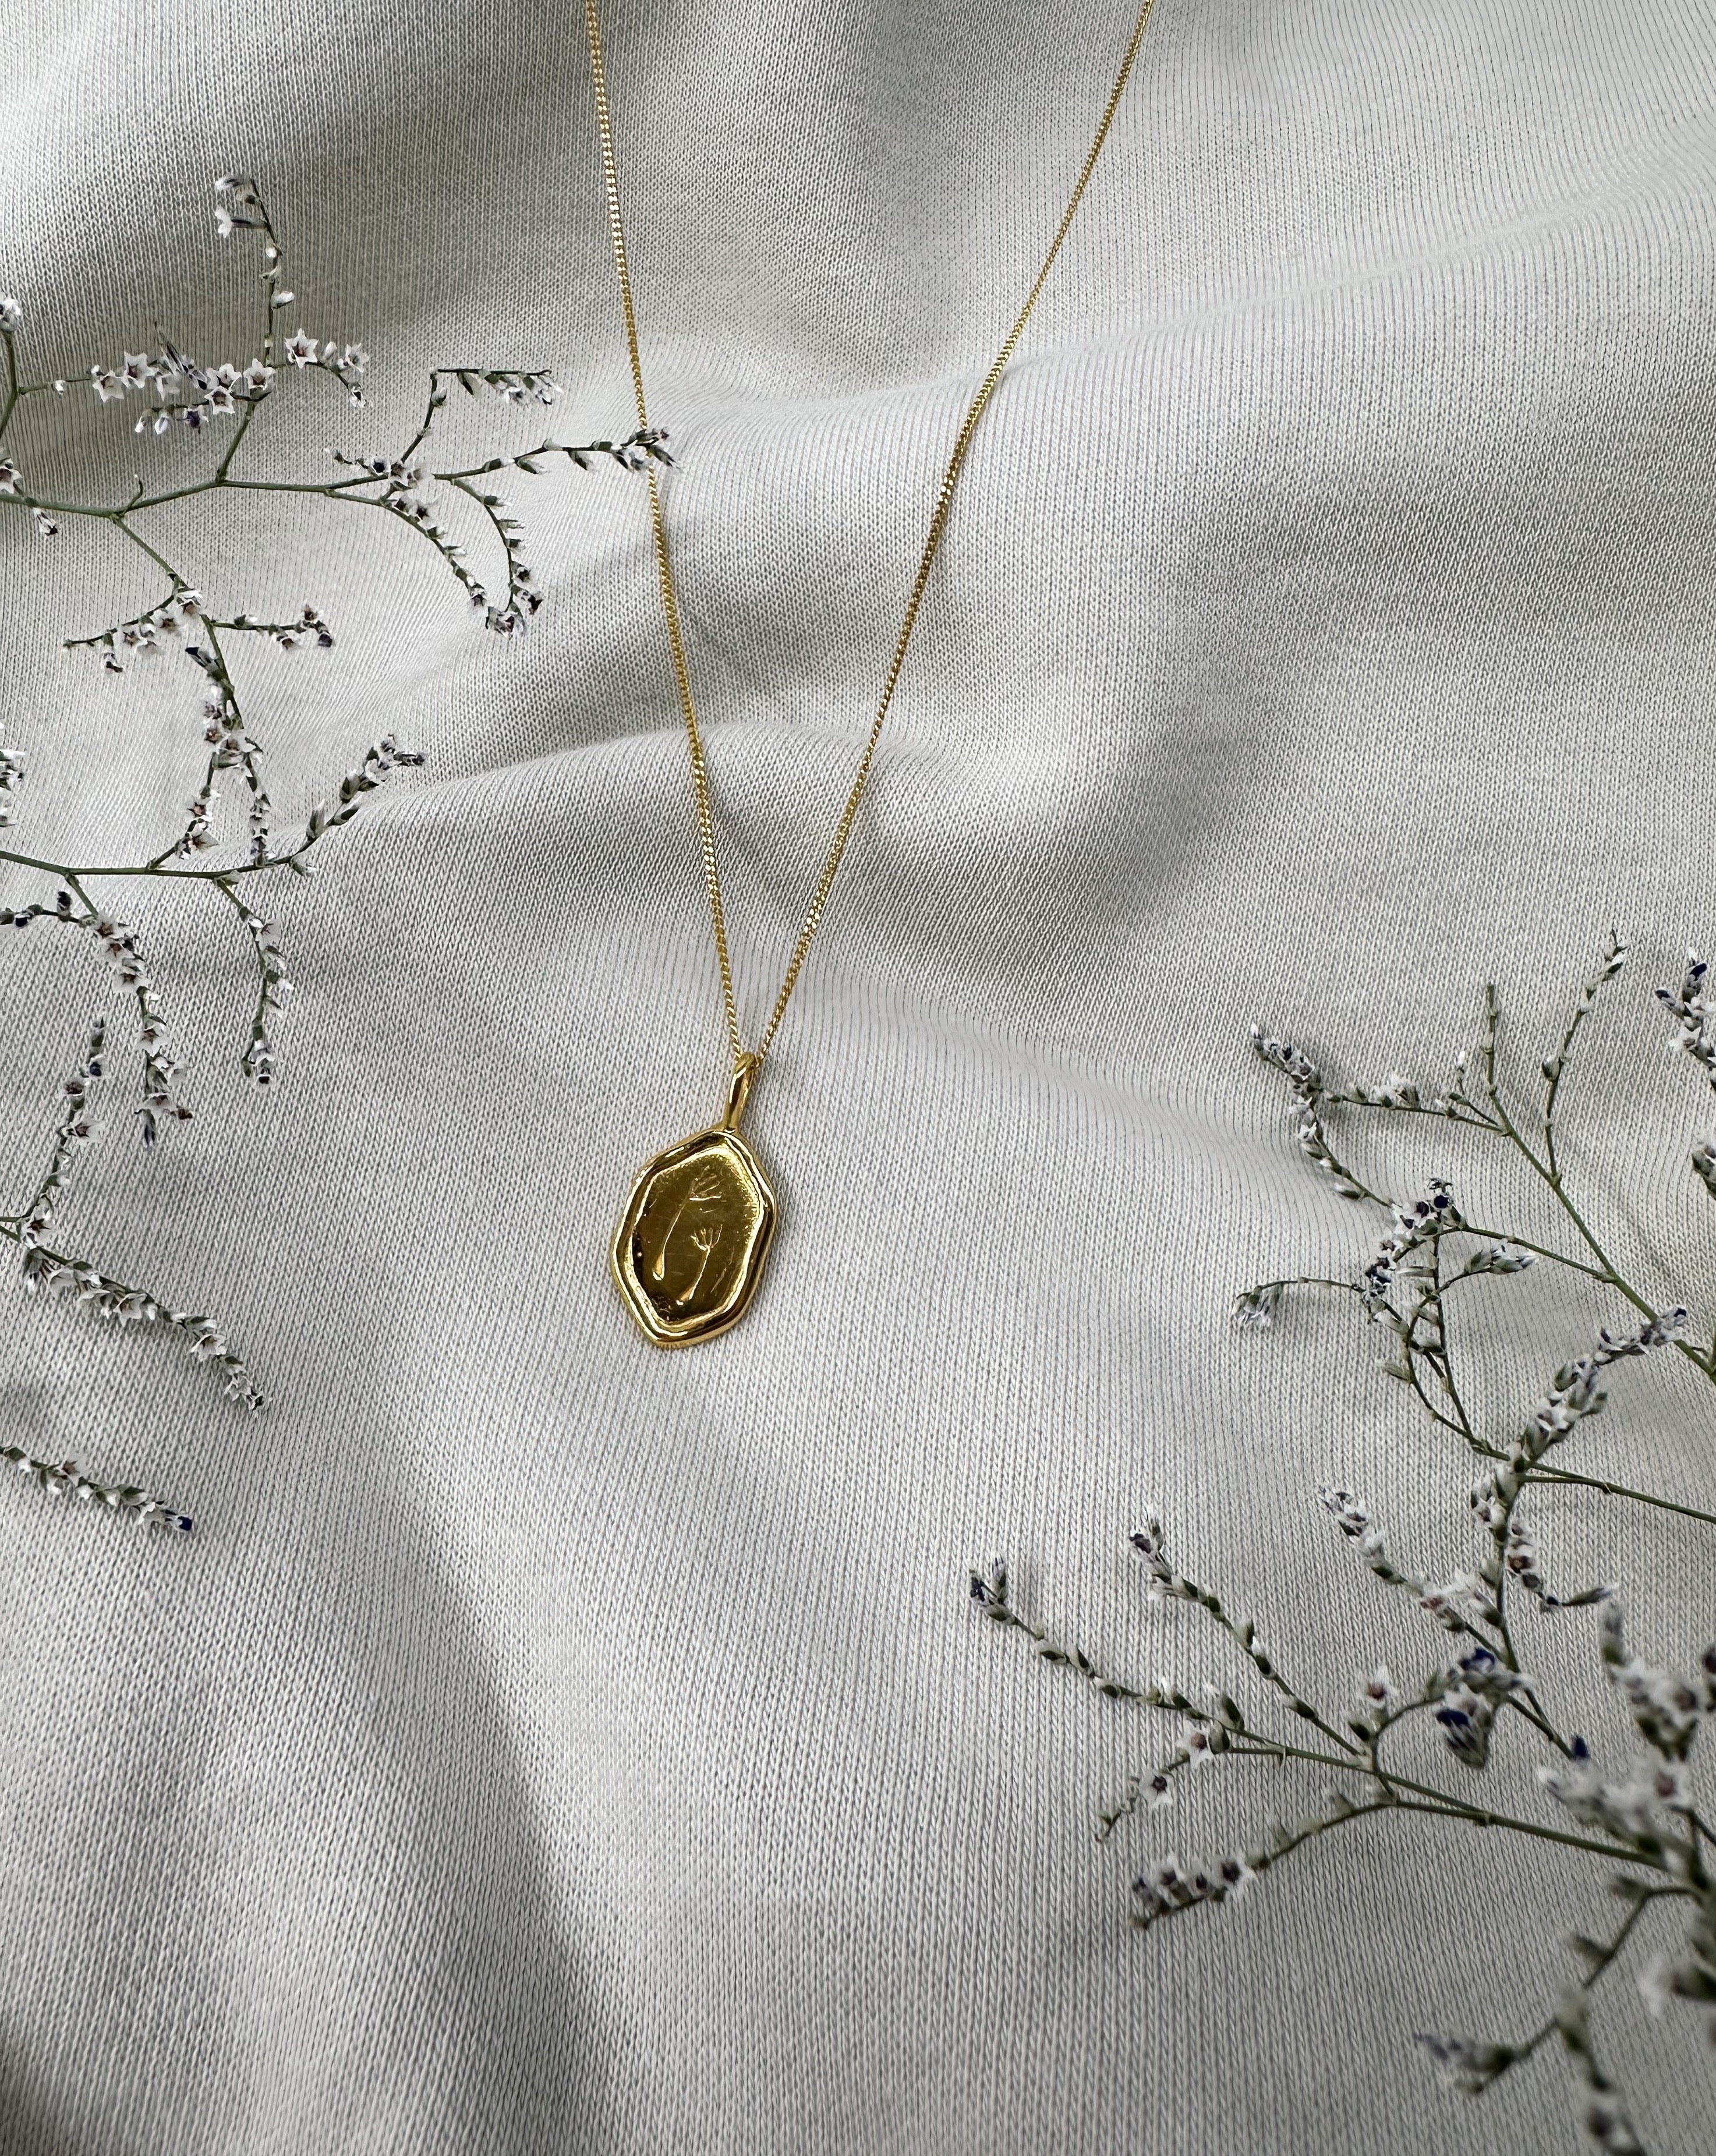 Pusteblumen Kette | Goldkette mit Plättchen Anhänger | Handgemachter Schmuck aus Bali | VERLAN Jewellery